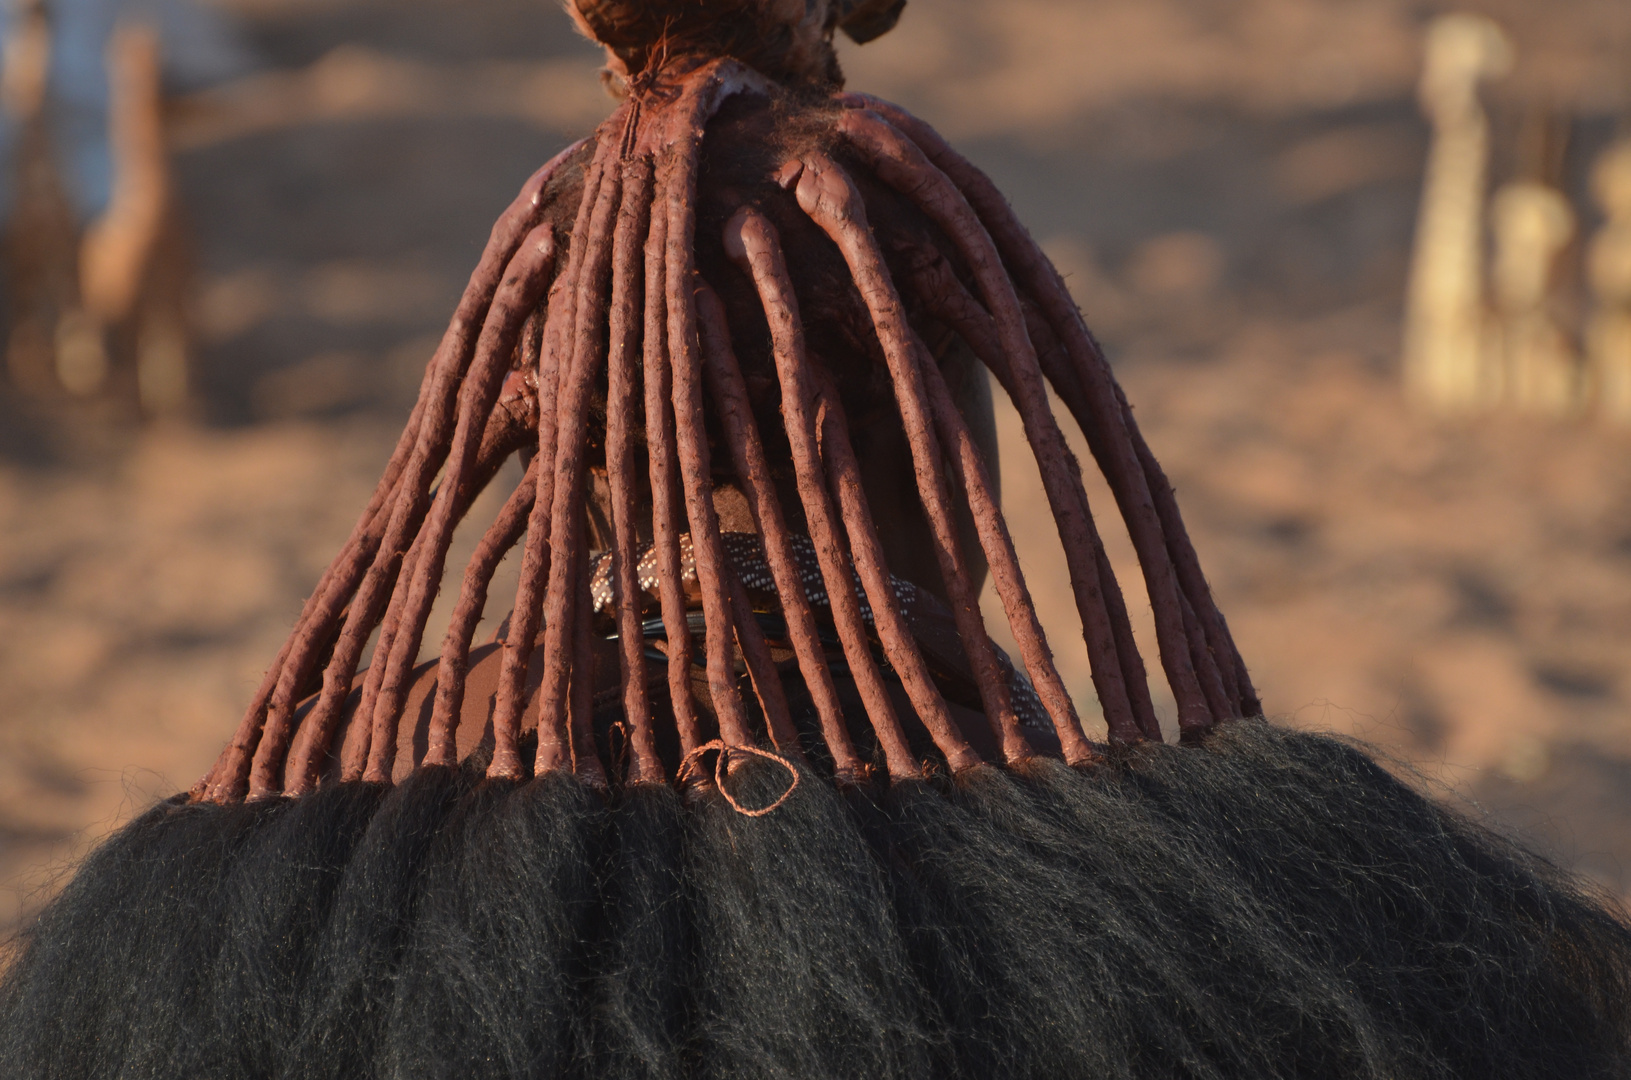 Himbafrau mit Haartracht